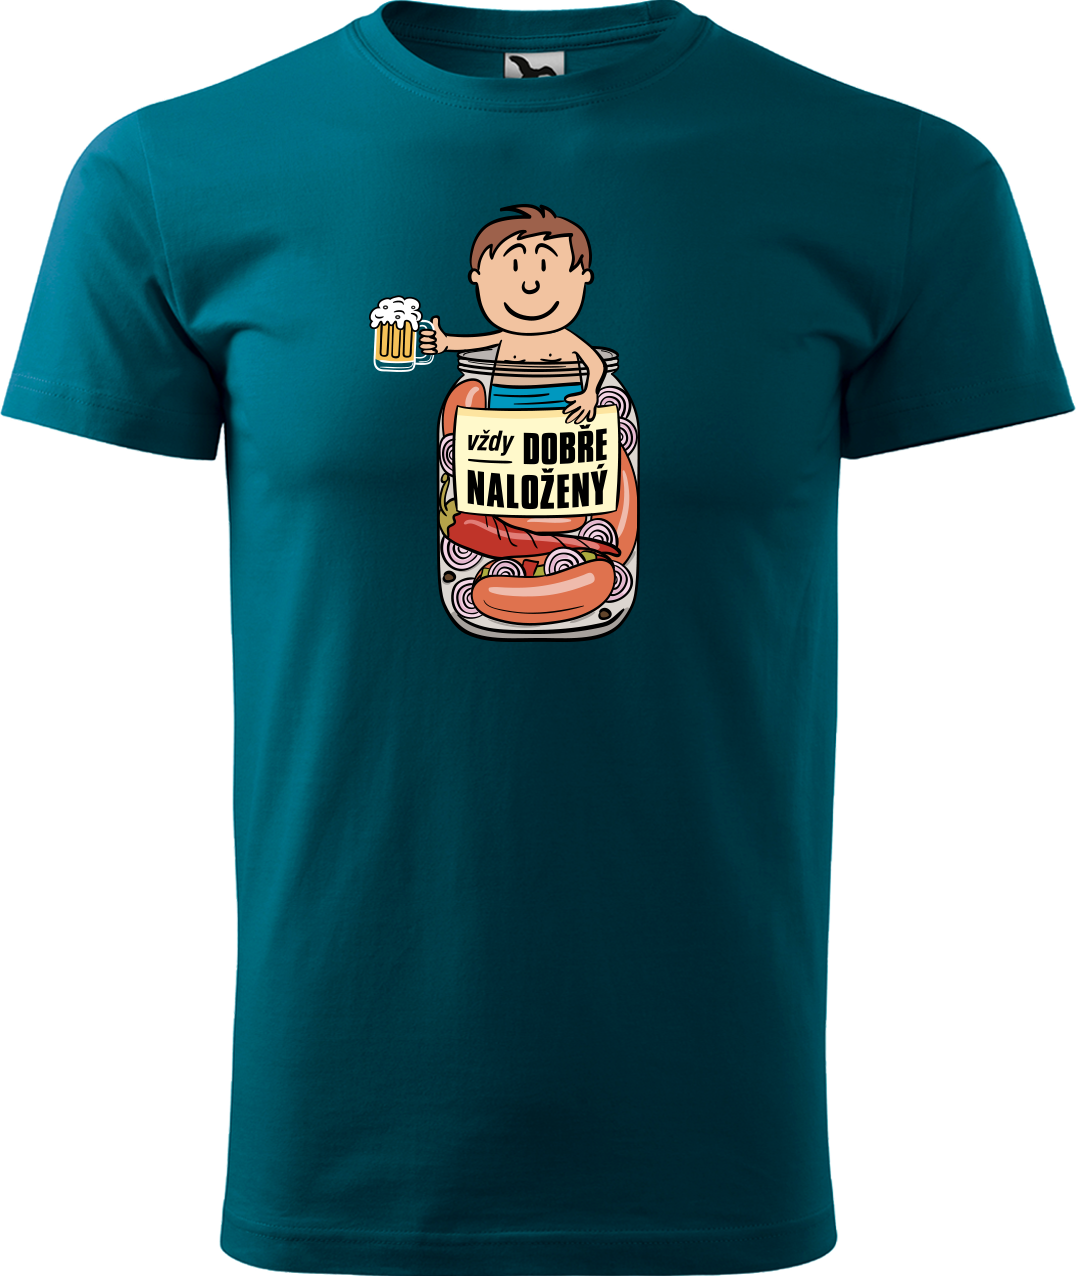 Vtipné tričko - Vždycky dobře naložený Velikost: XL, Barva: Petrolejová (93)